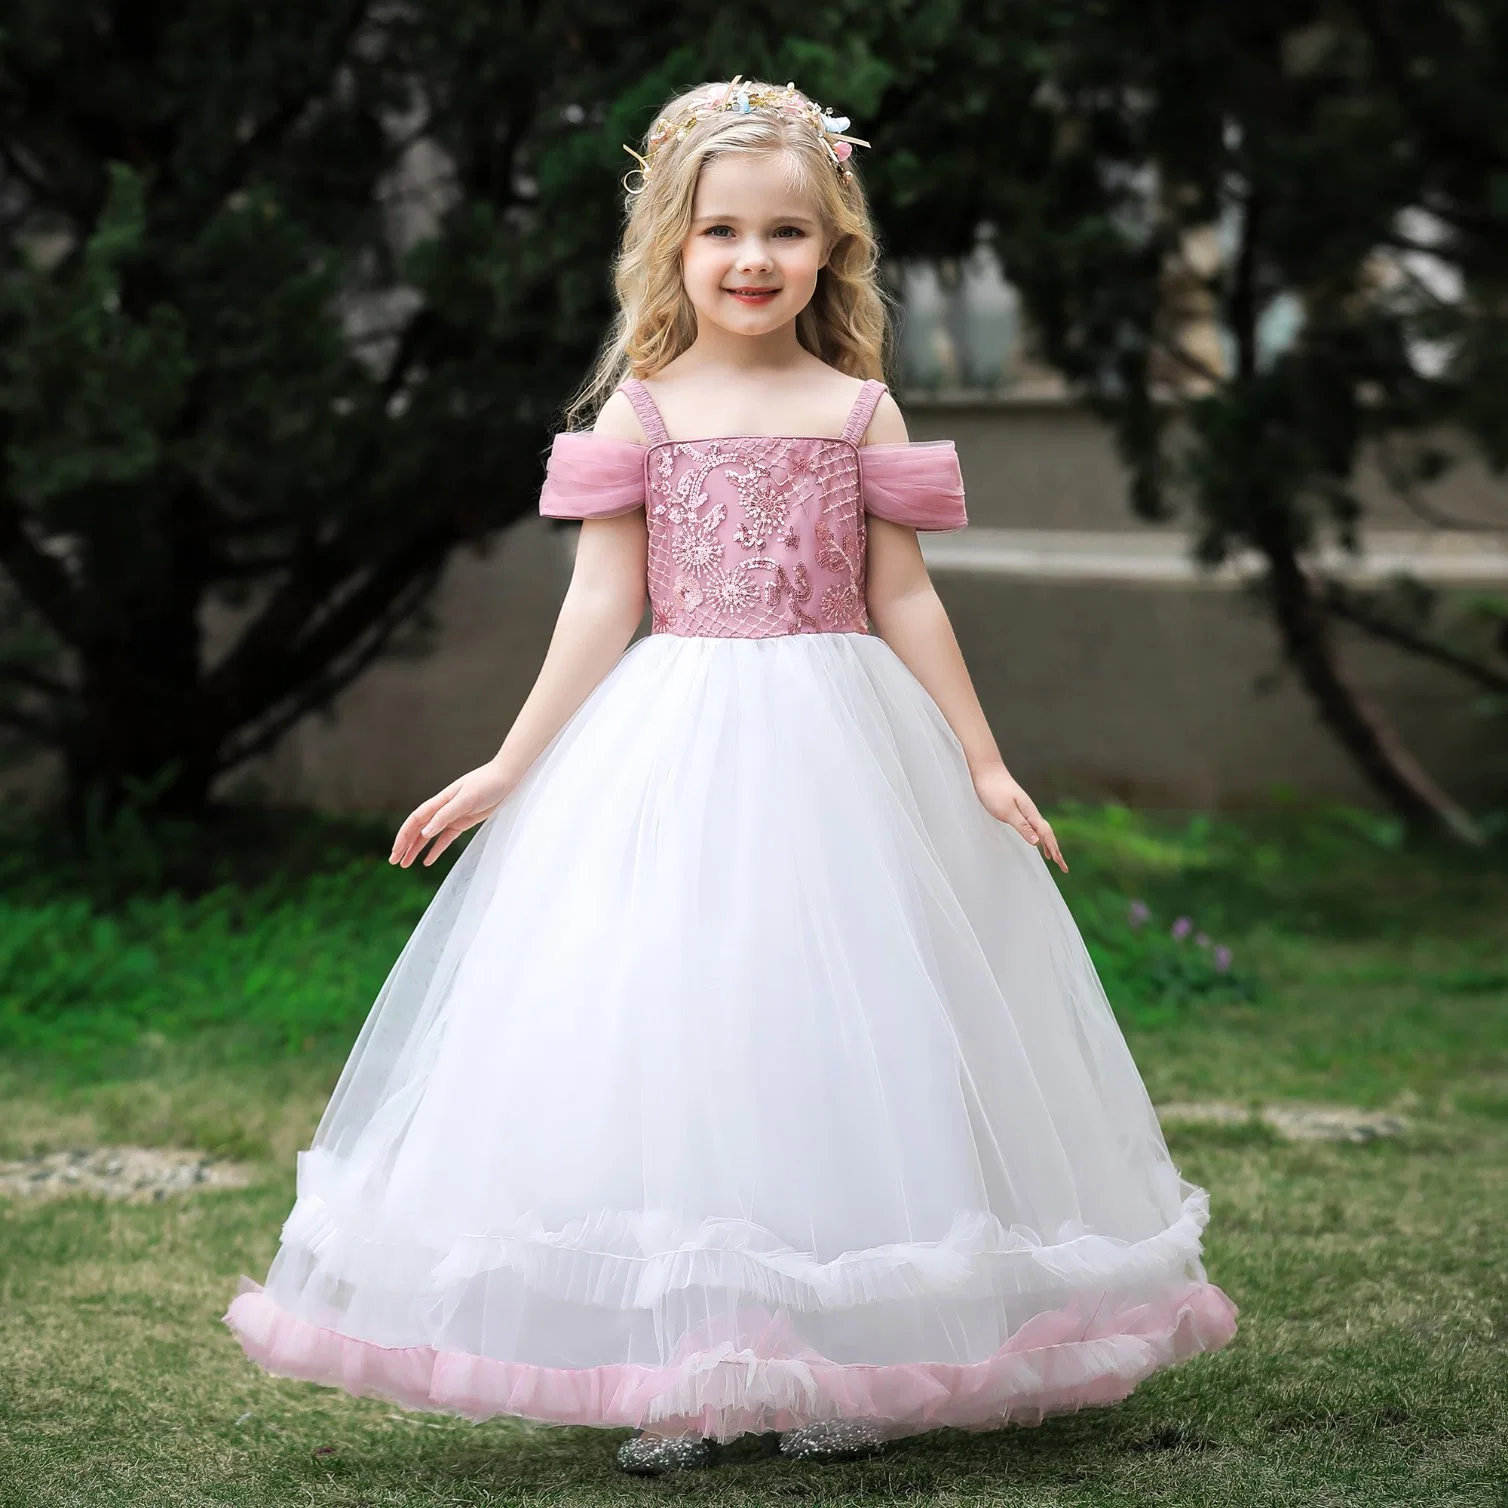 Les enfants Vêtements bébé Filles d'usure partie vêtement Robe de mariée robe de bal princesse robe longue sans manches Frock Sweet